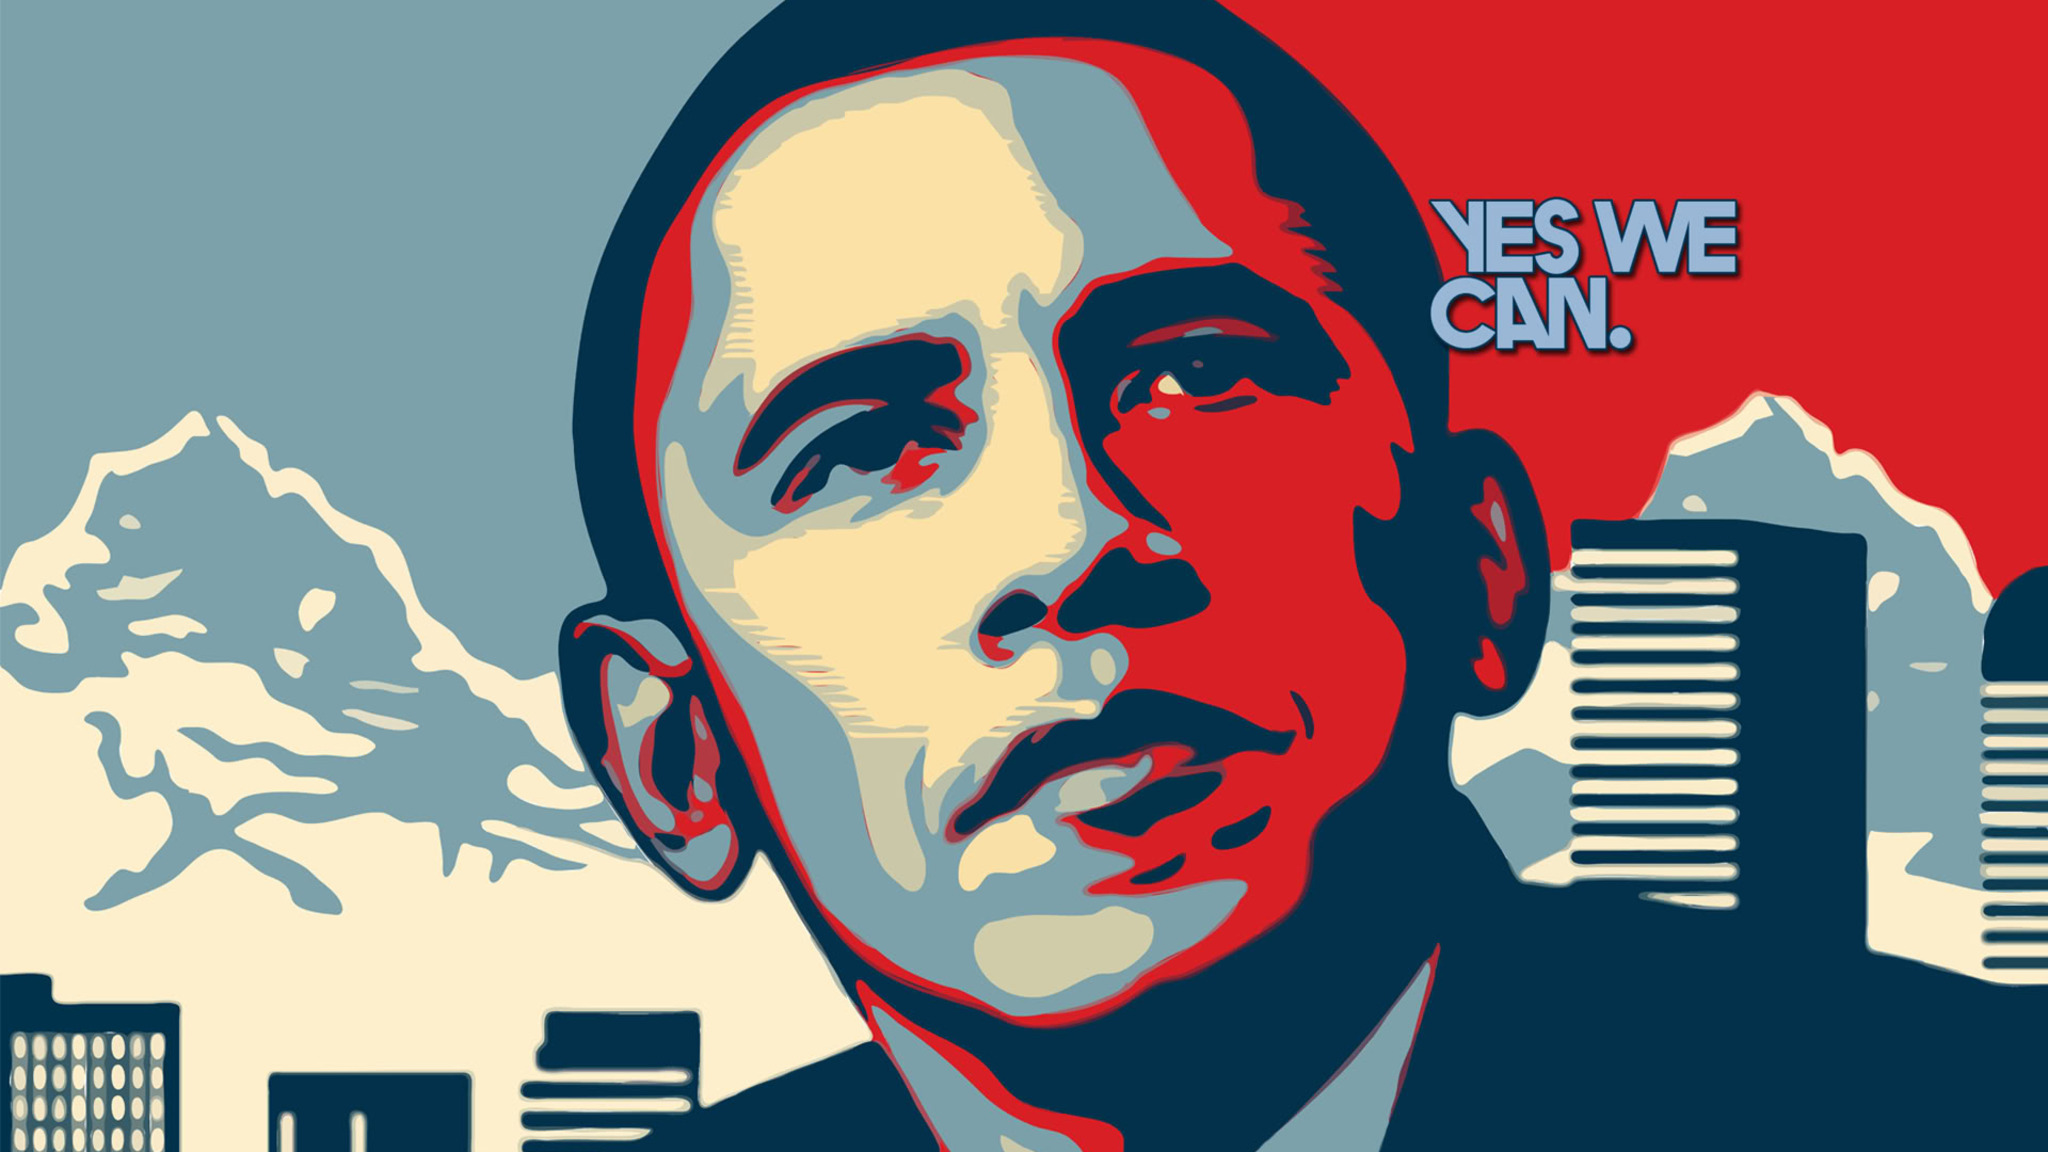 Yes we were. Шепард Фейри Барак Обама. Обама Хоуп. Обама Постер Yes we can. Барак Обама арт.